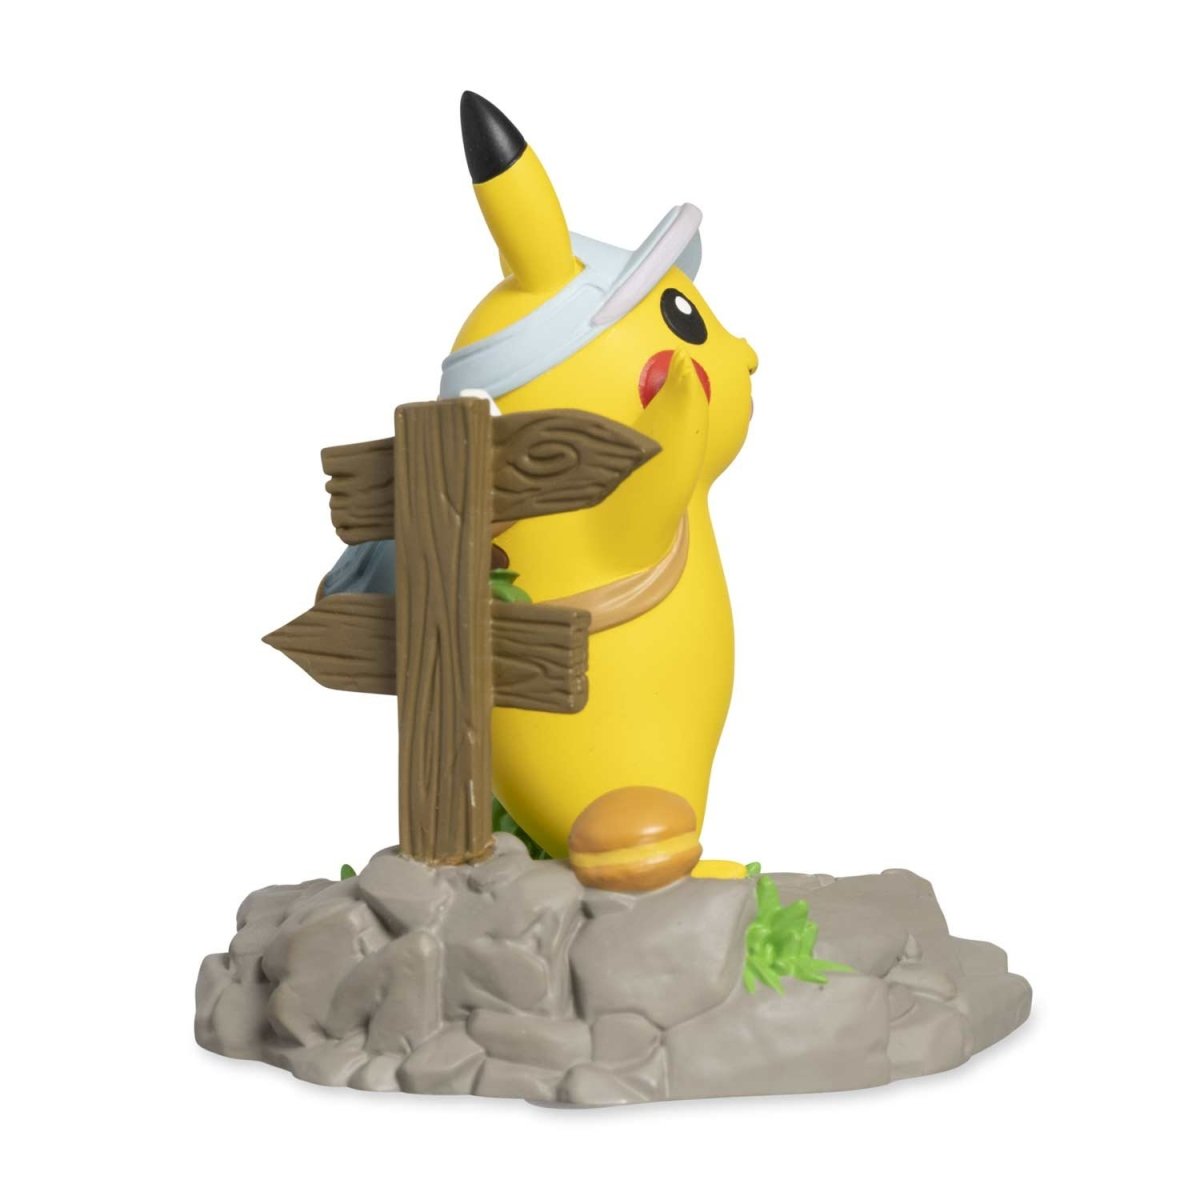 Pokémon Delicious Adventure: Pikachu Sets Off Figure-Pokemon Centre-Ace Cards &amp; Collectibles